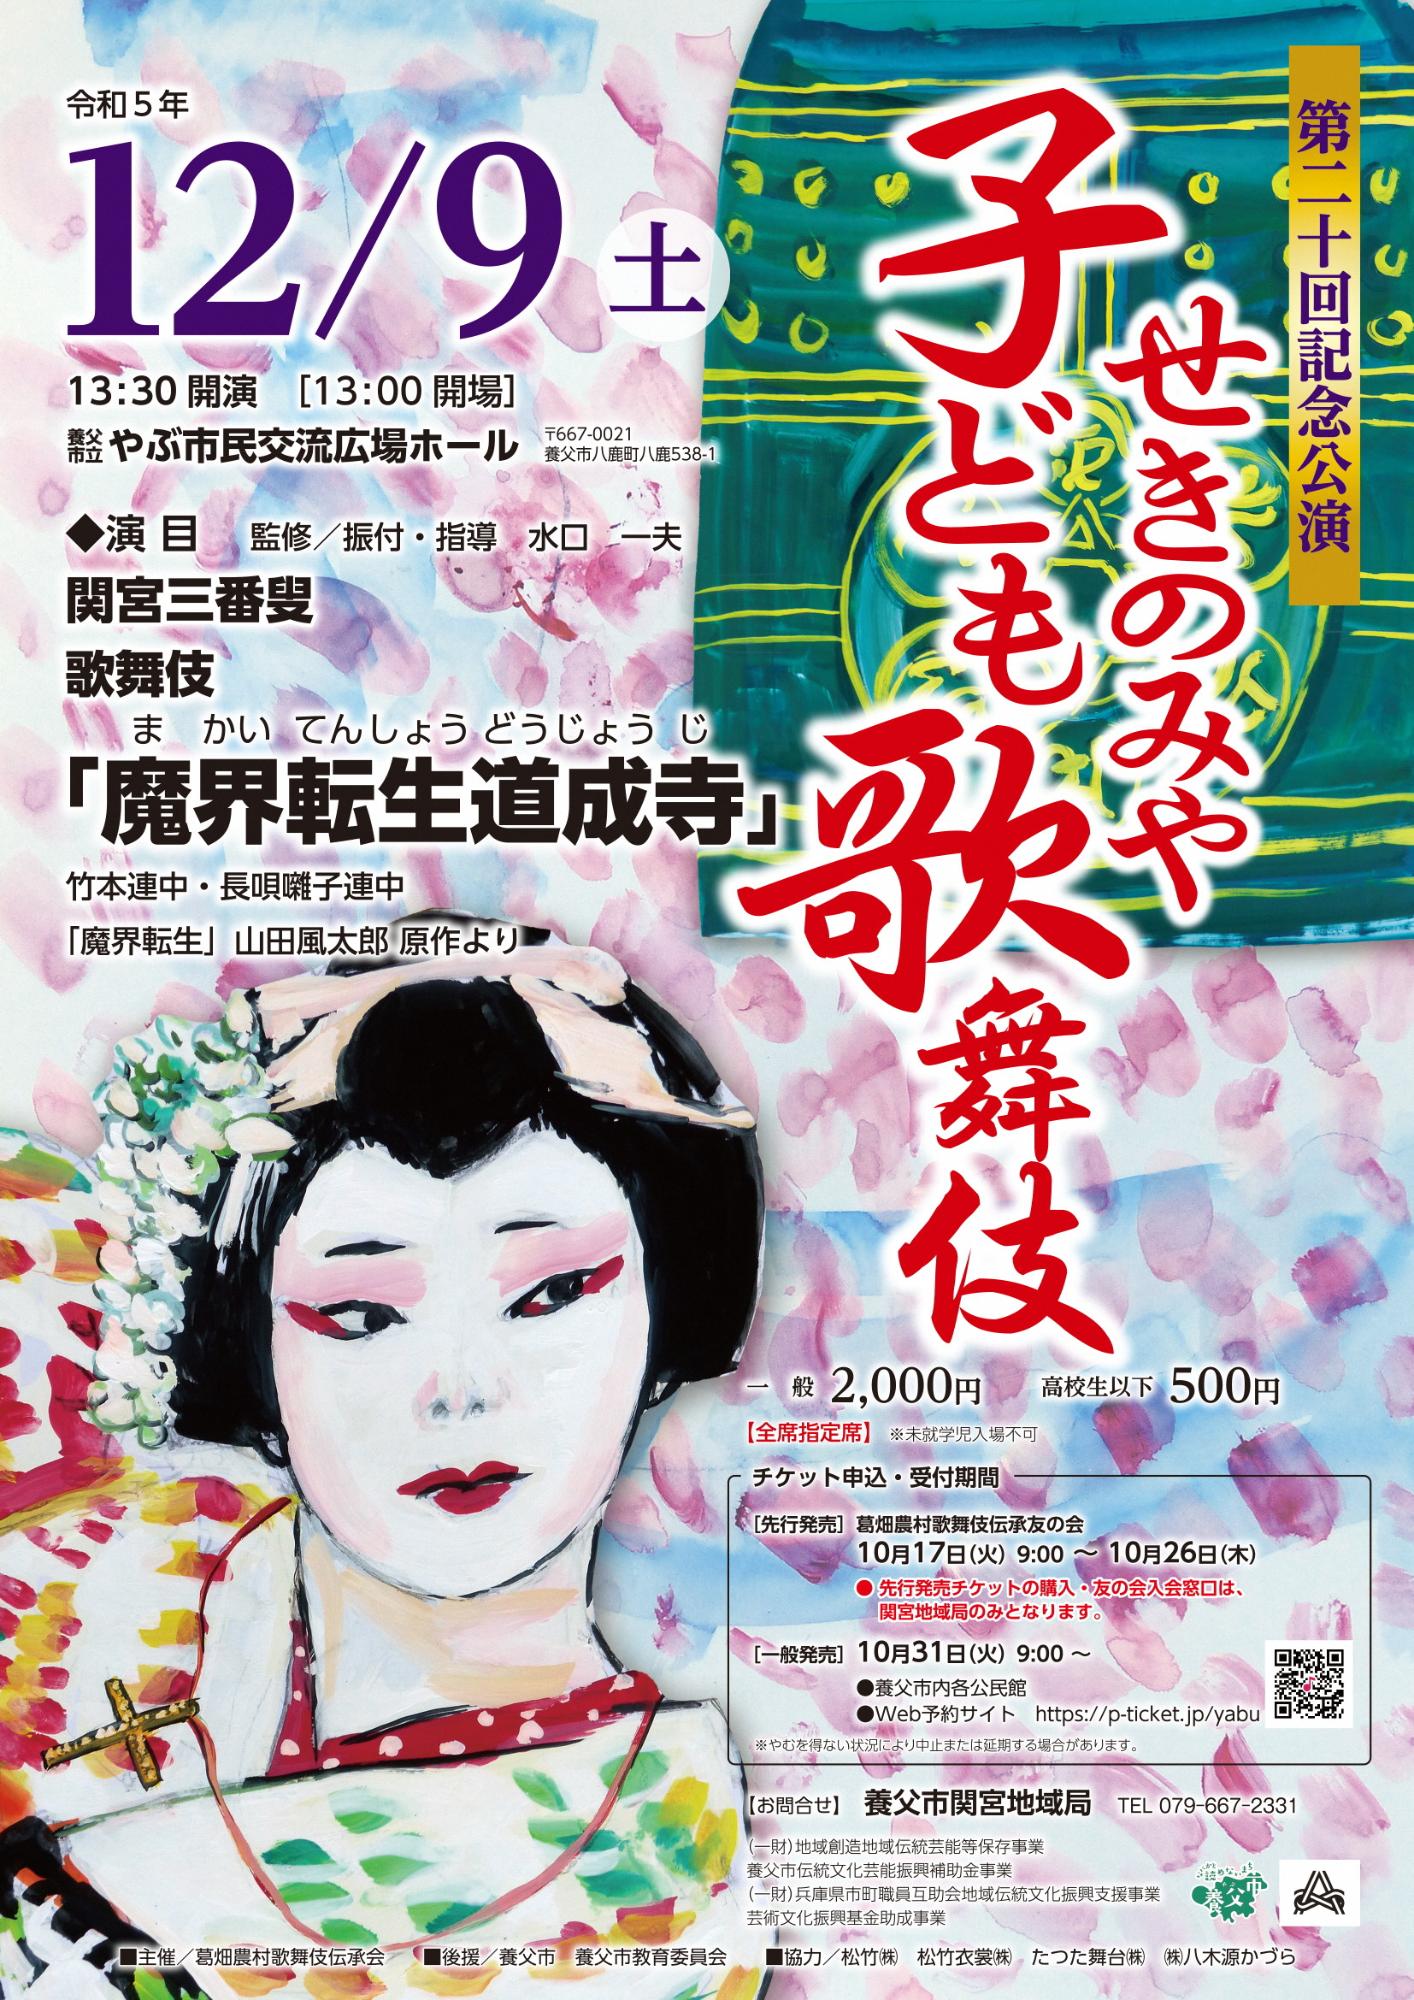 EVENT ANNOUNCEMENT: 20th Sekinomiya Children’s Kabuki Theatre